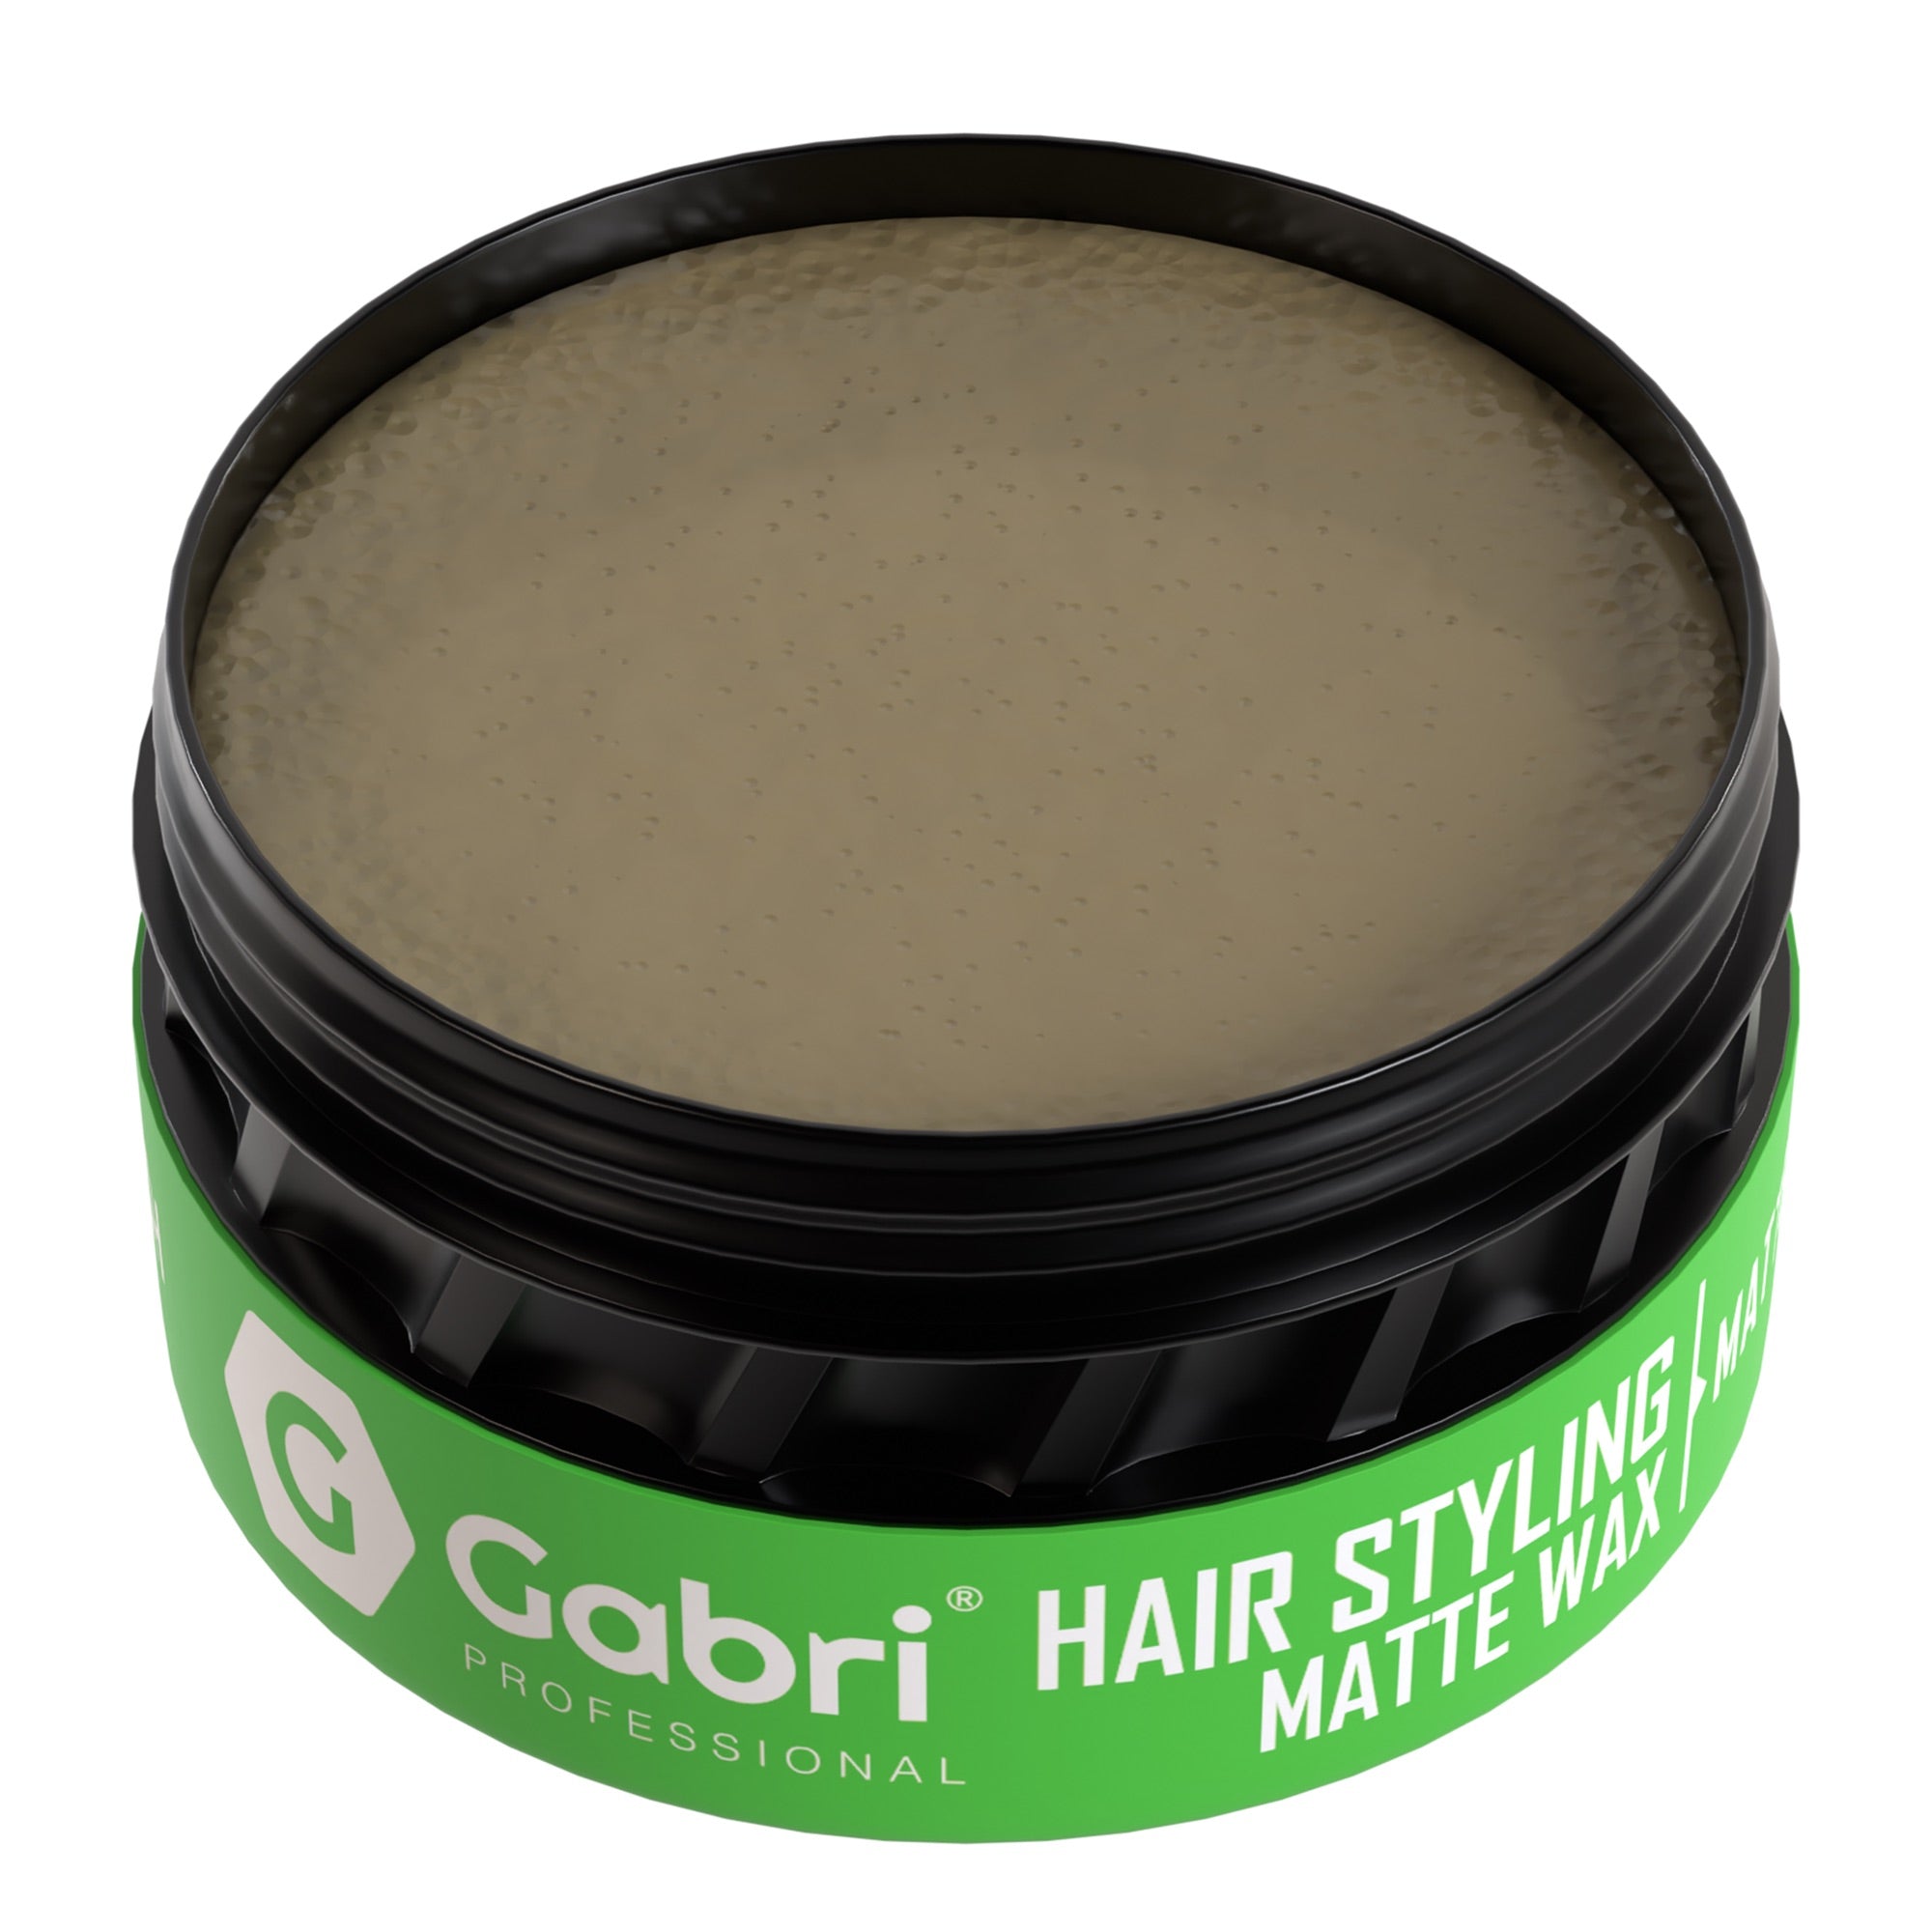 Gabri Professional - Hair Styling Wax Matte Finish 150ml